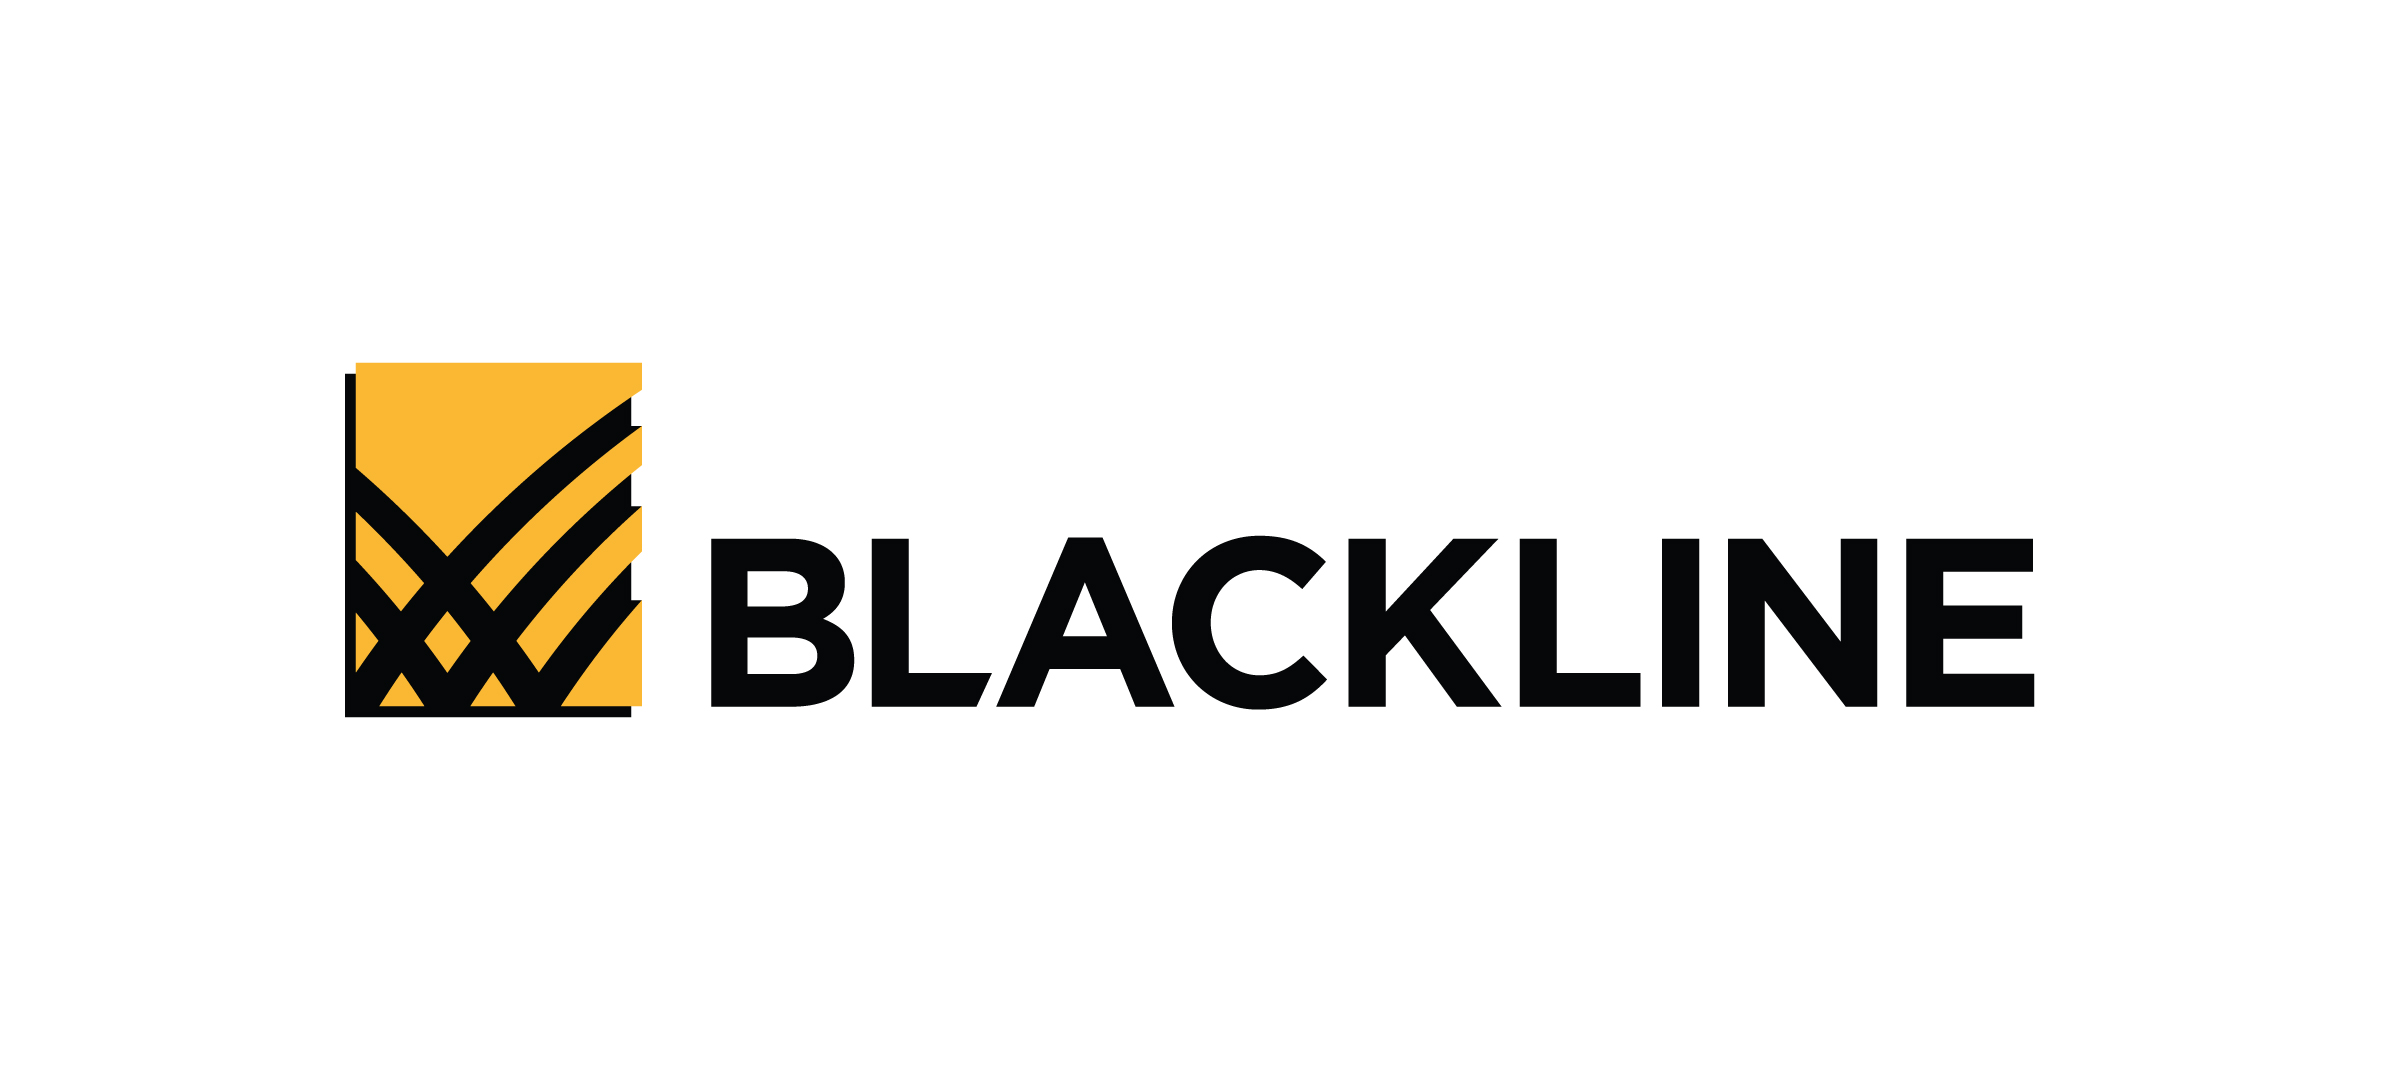 BlackLine Logo 02 1  5bbcc69f6b5e7